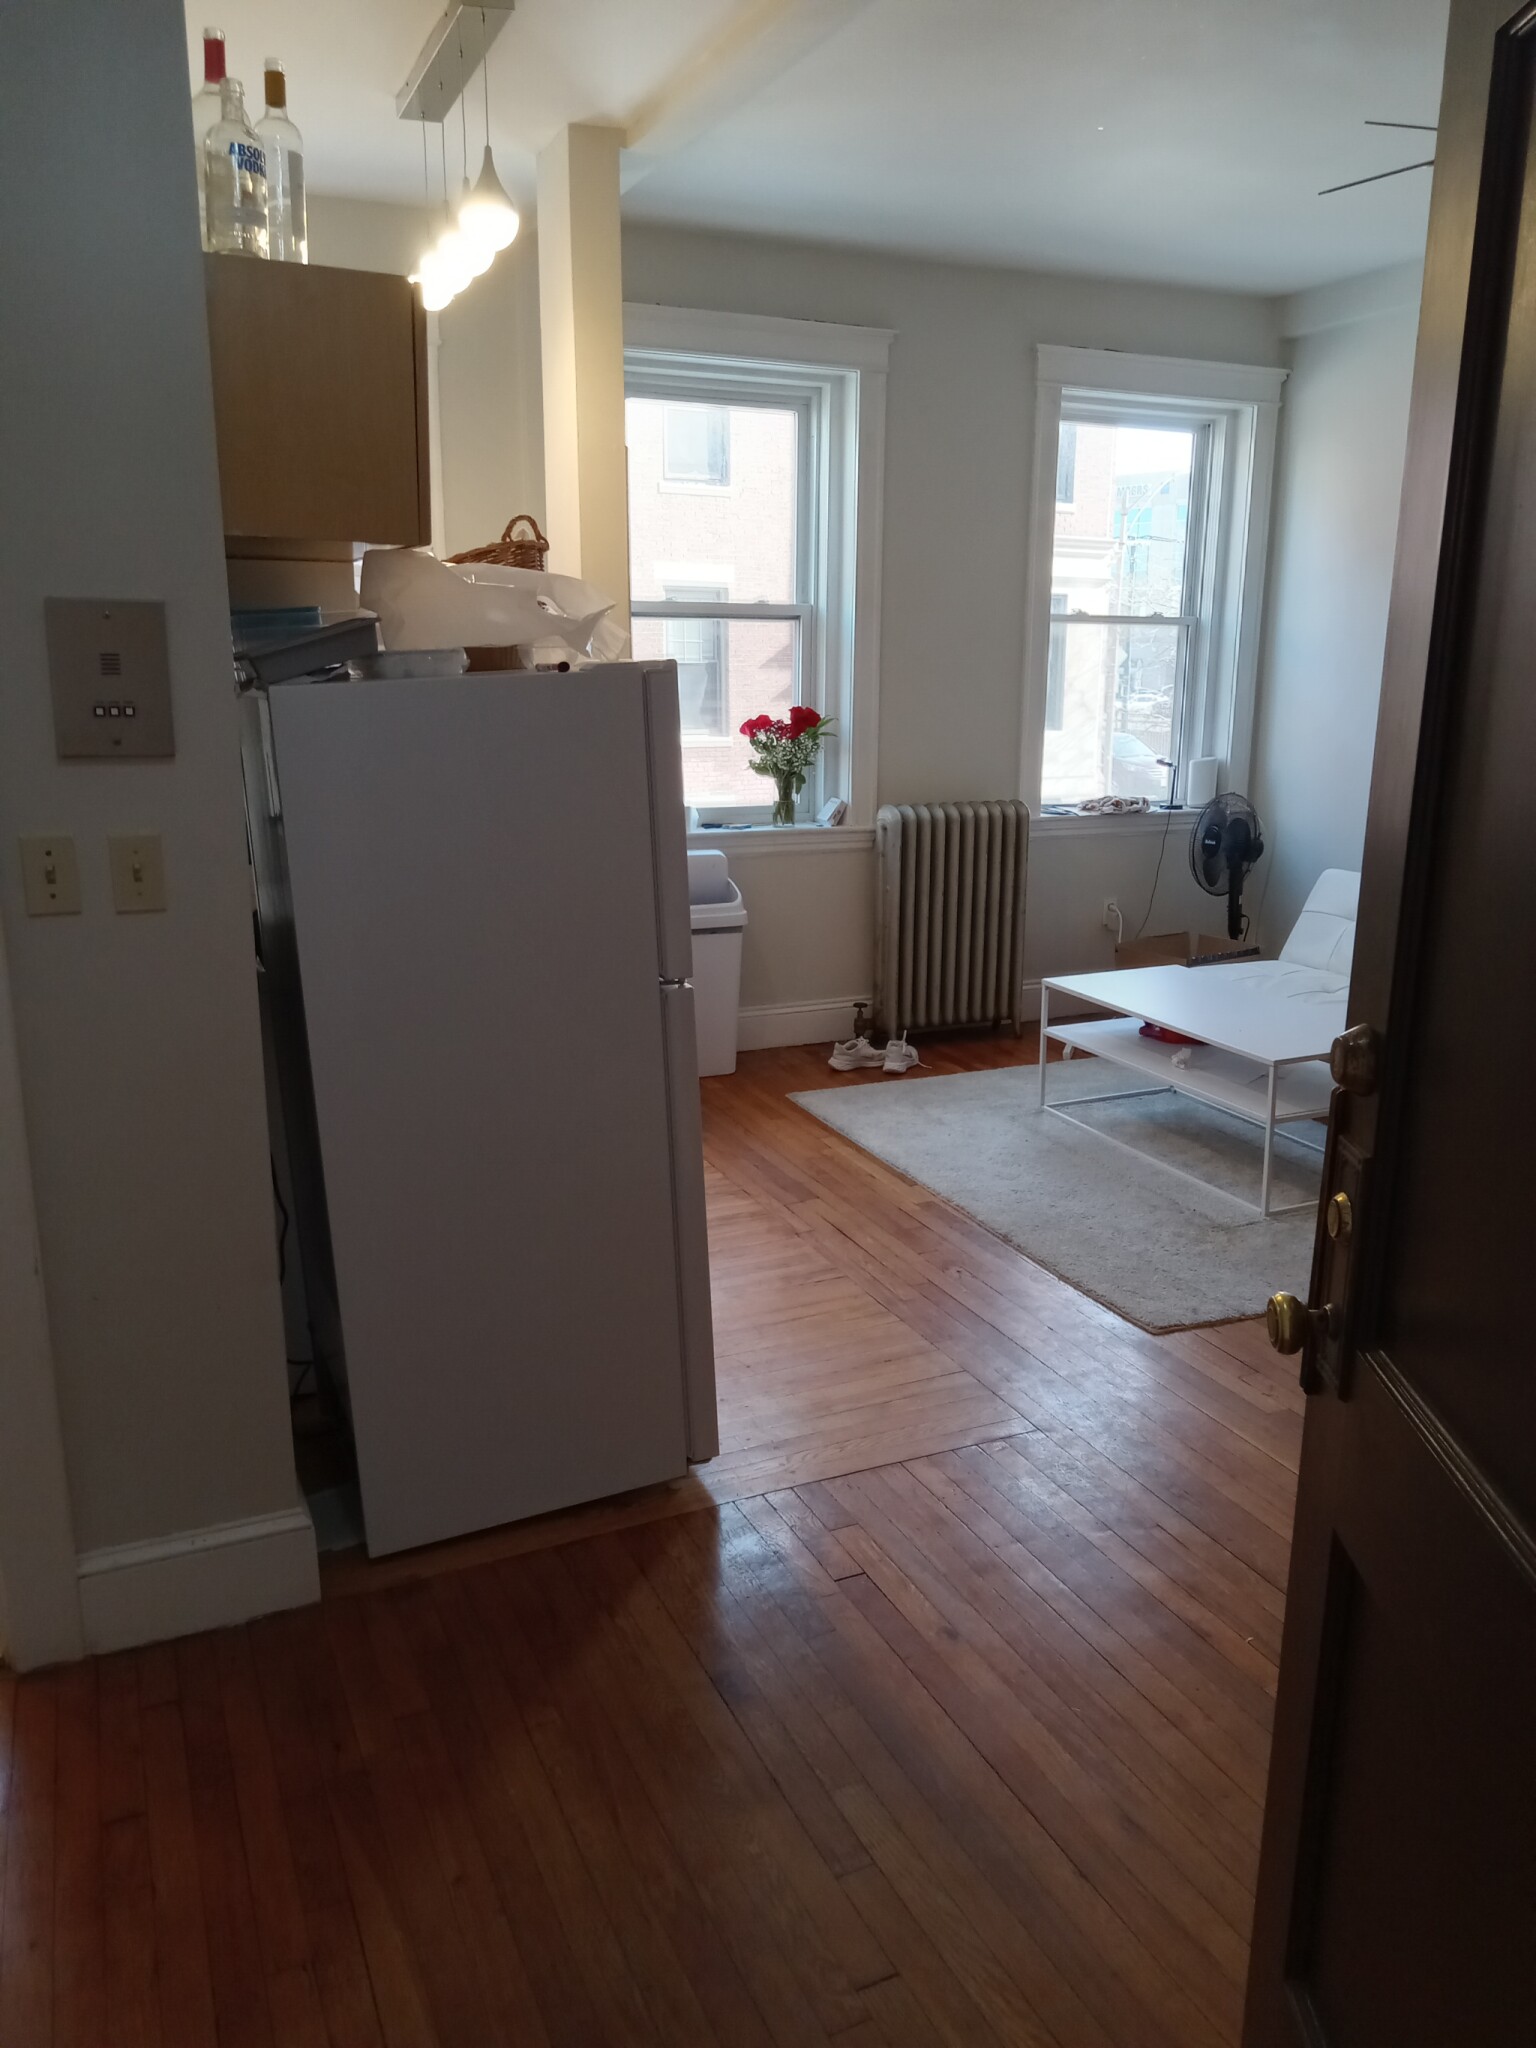 Photos of apartment on Cambridge St.,Boston MA 02134